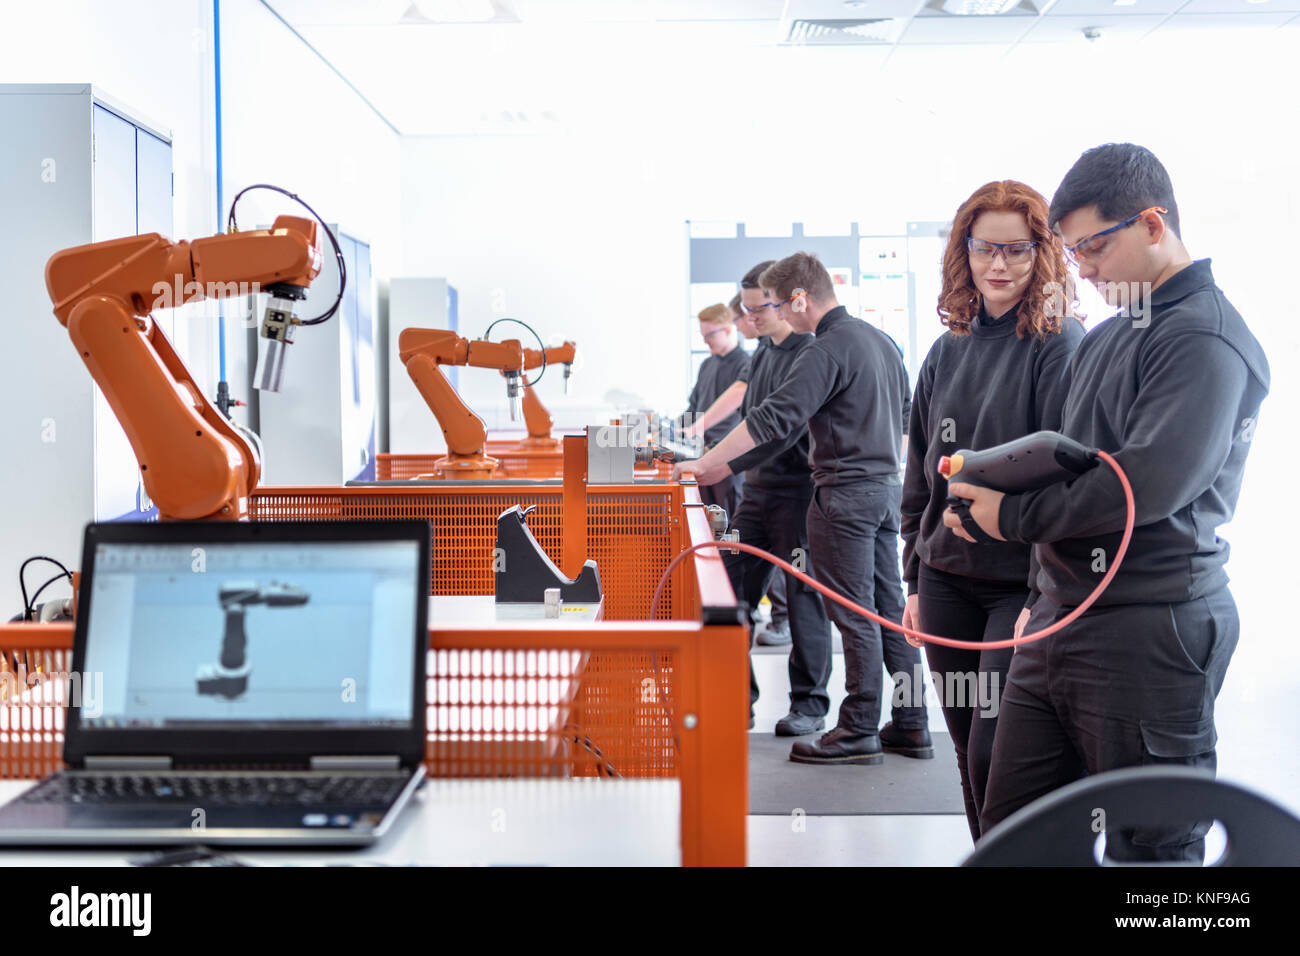 À l'aide d'apprentis Robotique Robots industriels dans le domaine de la robotique de test facility Banque D'Images